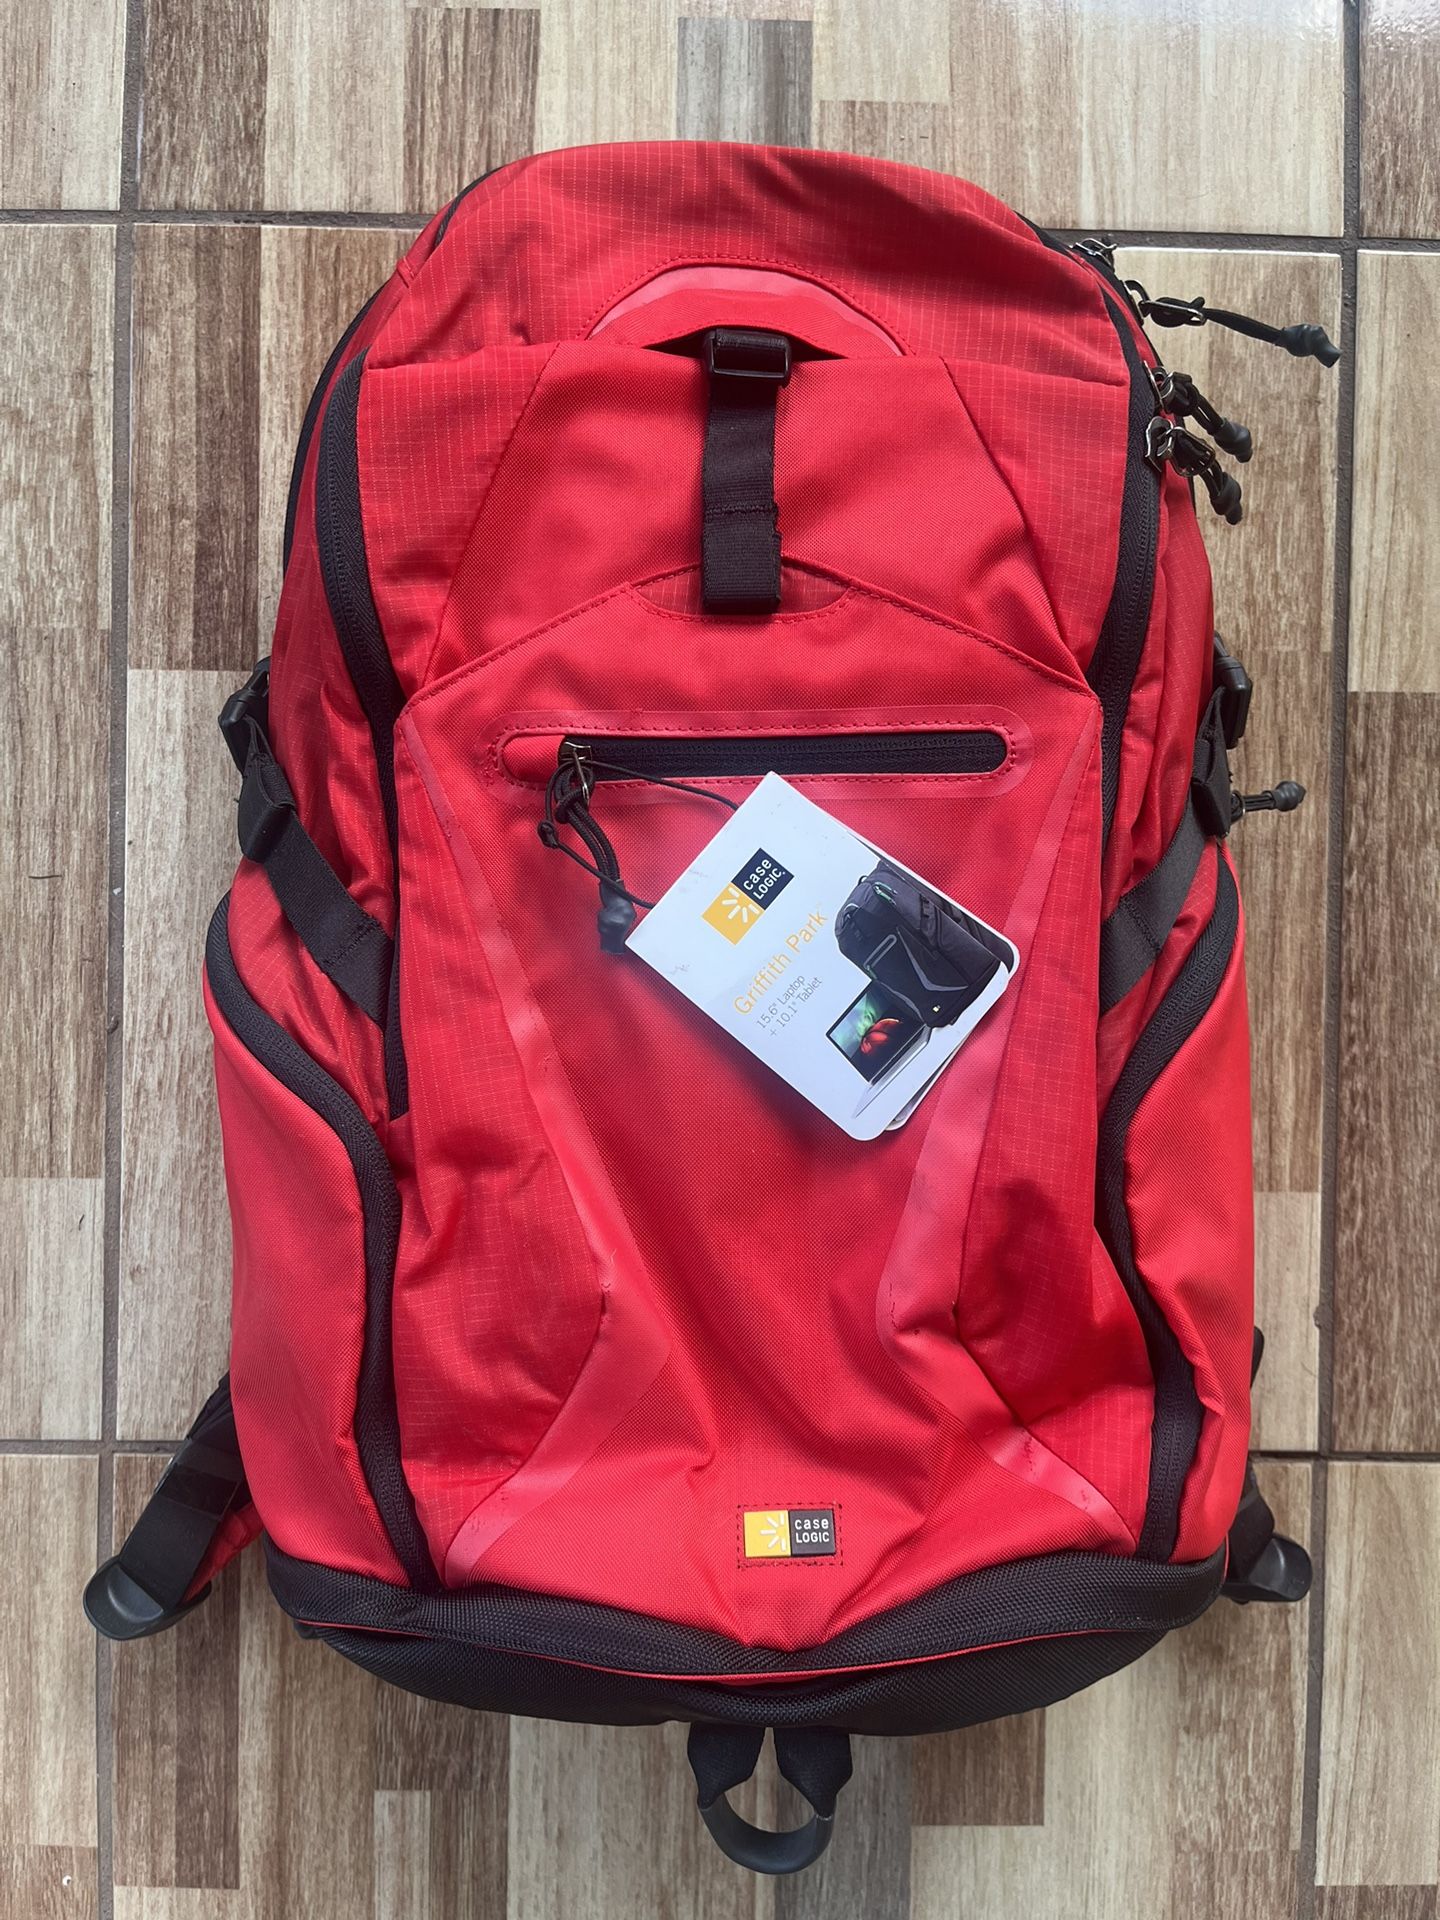 Backpack   laptop Bag  Case Logic Brand